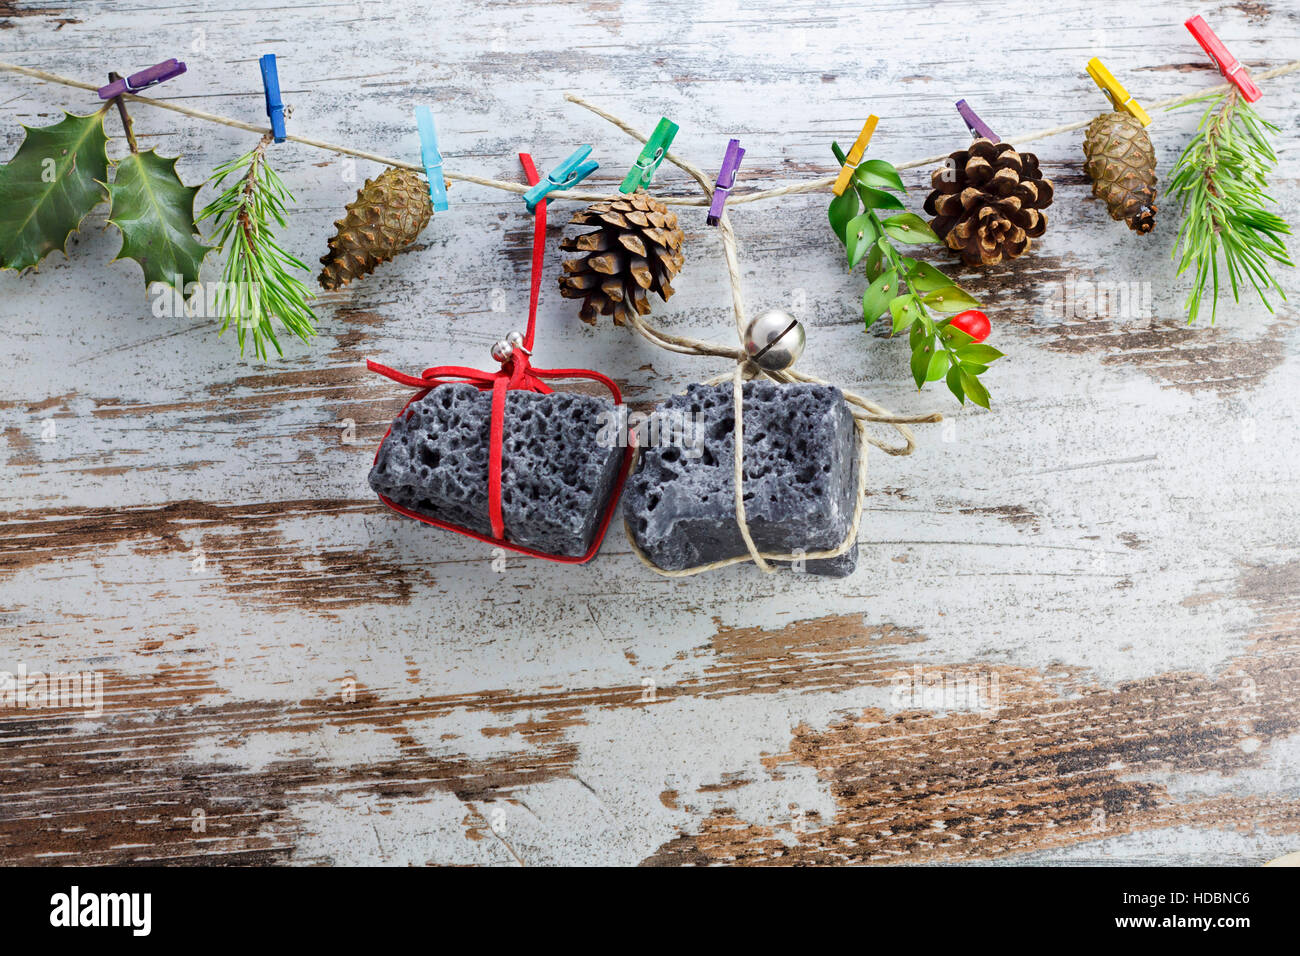 Kohle, Weihnachtsgeschenke, hängen in einer Zeichenfolge mit Wäscheklammern. Stockfoto